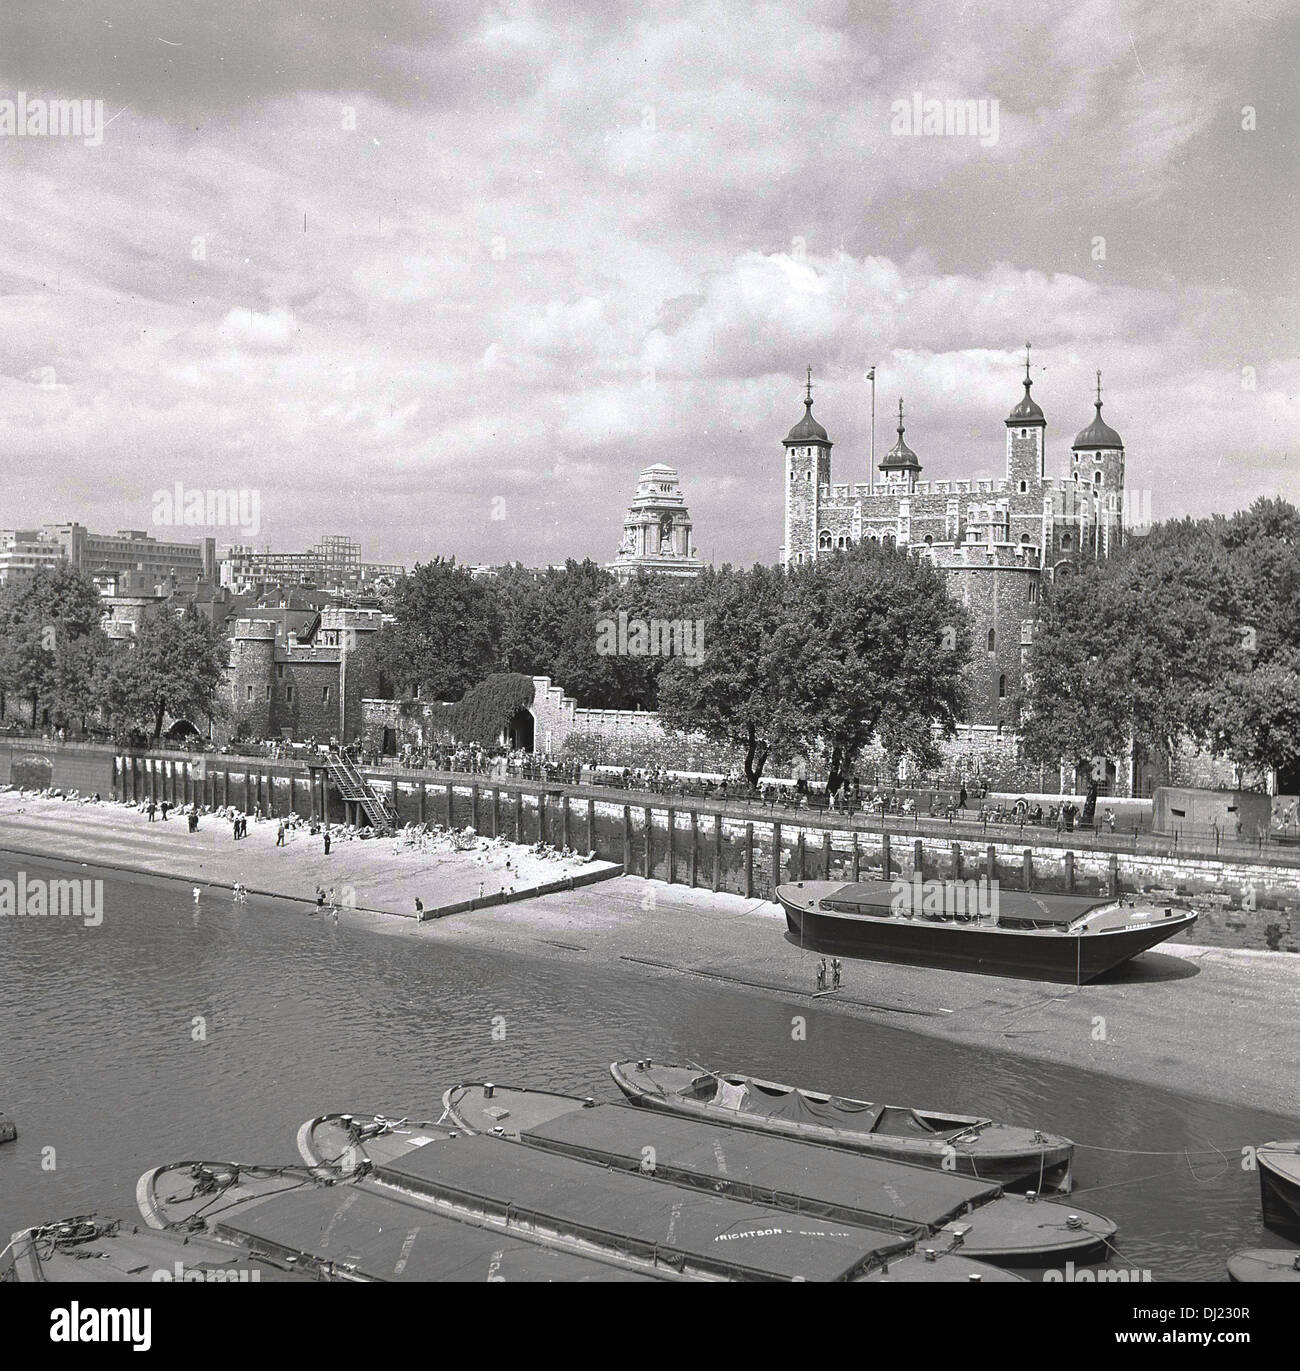 1950er Jahren und ein historisches Bild aus dem ganzen der Themse zeigt die berühmte Tower of London und Lastkähne festgemacht, auf dem Wasser. Stockfoto